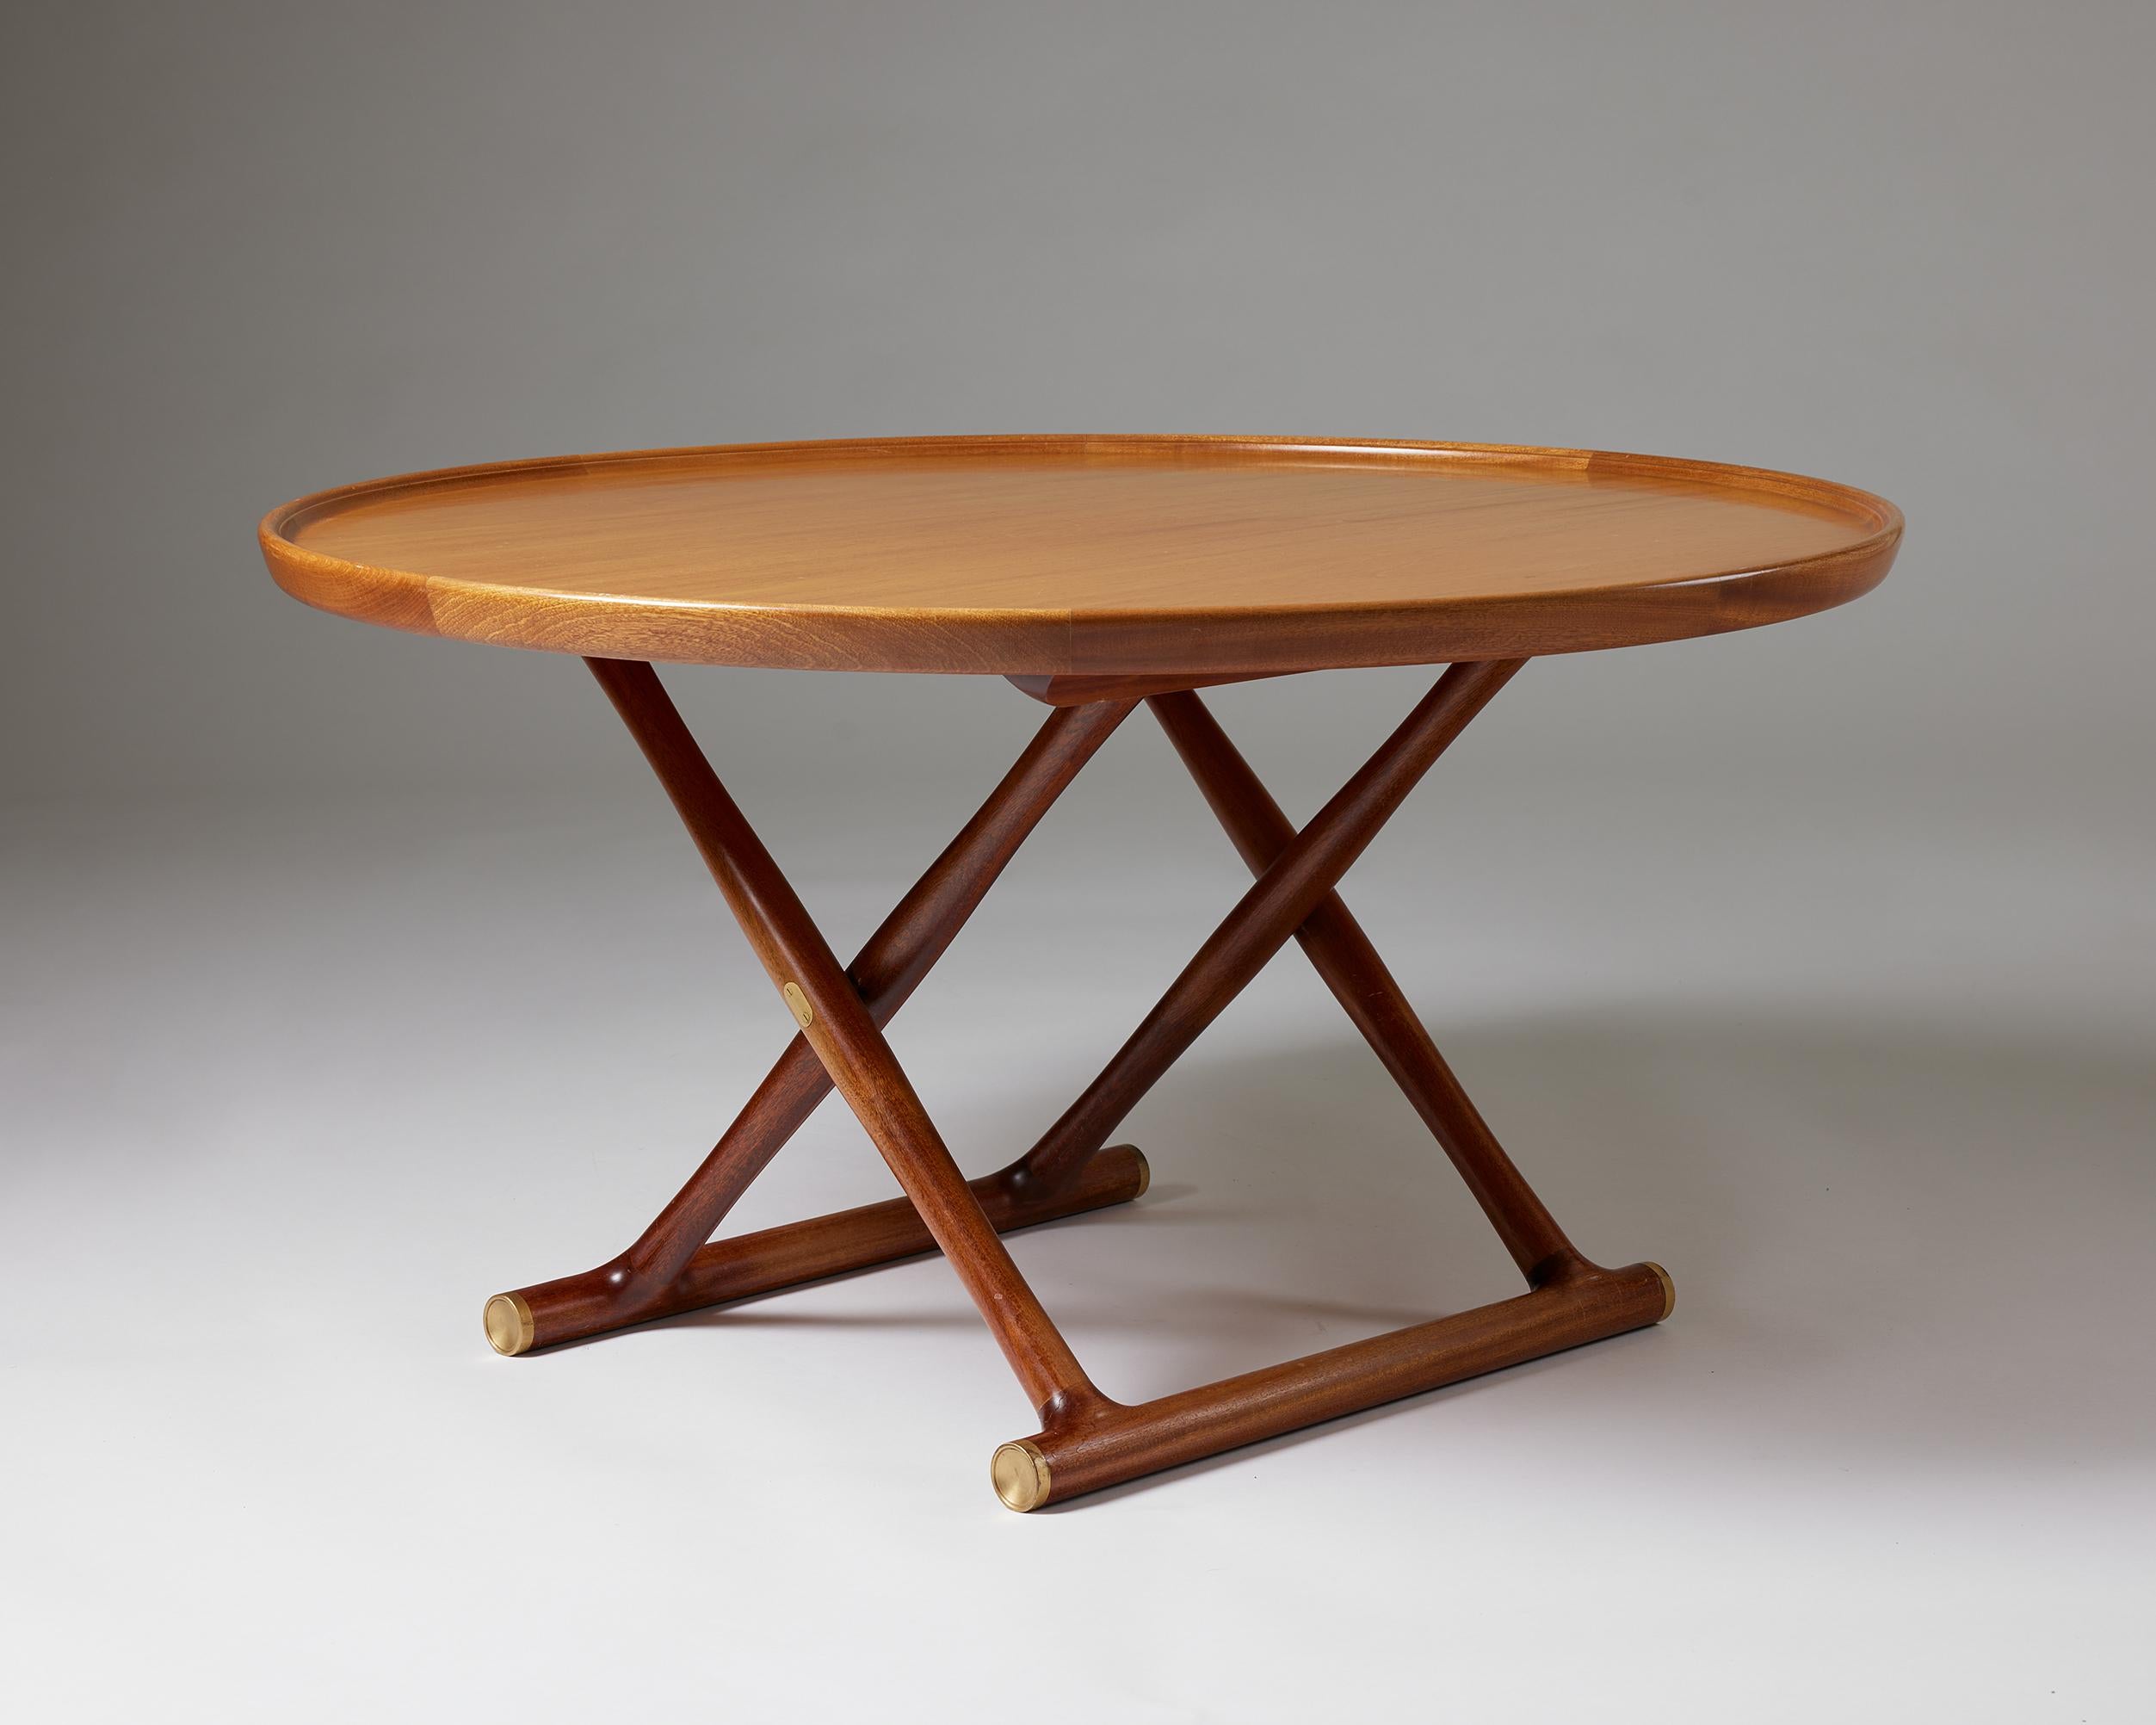 Danish ‘Egyptian Table’ Designed by Mogens Lassen for Rud. Rasmussen, Denmark, 1935